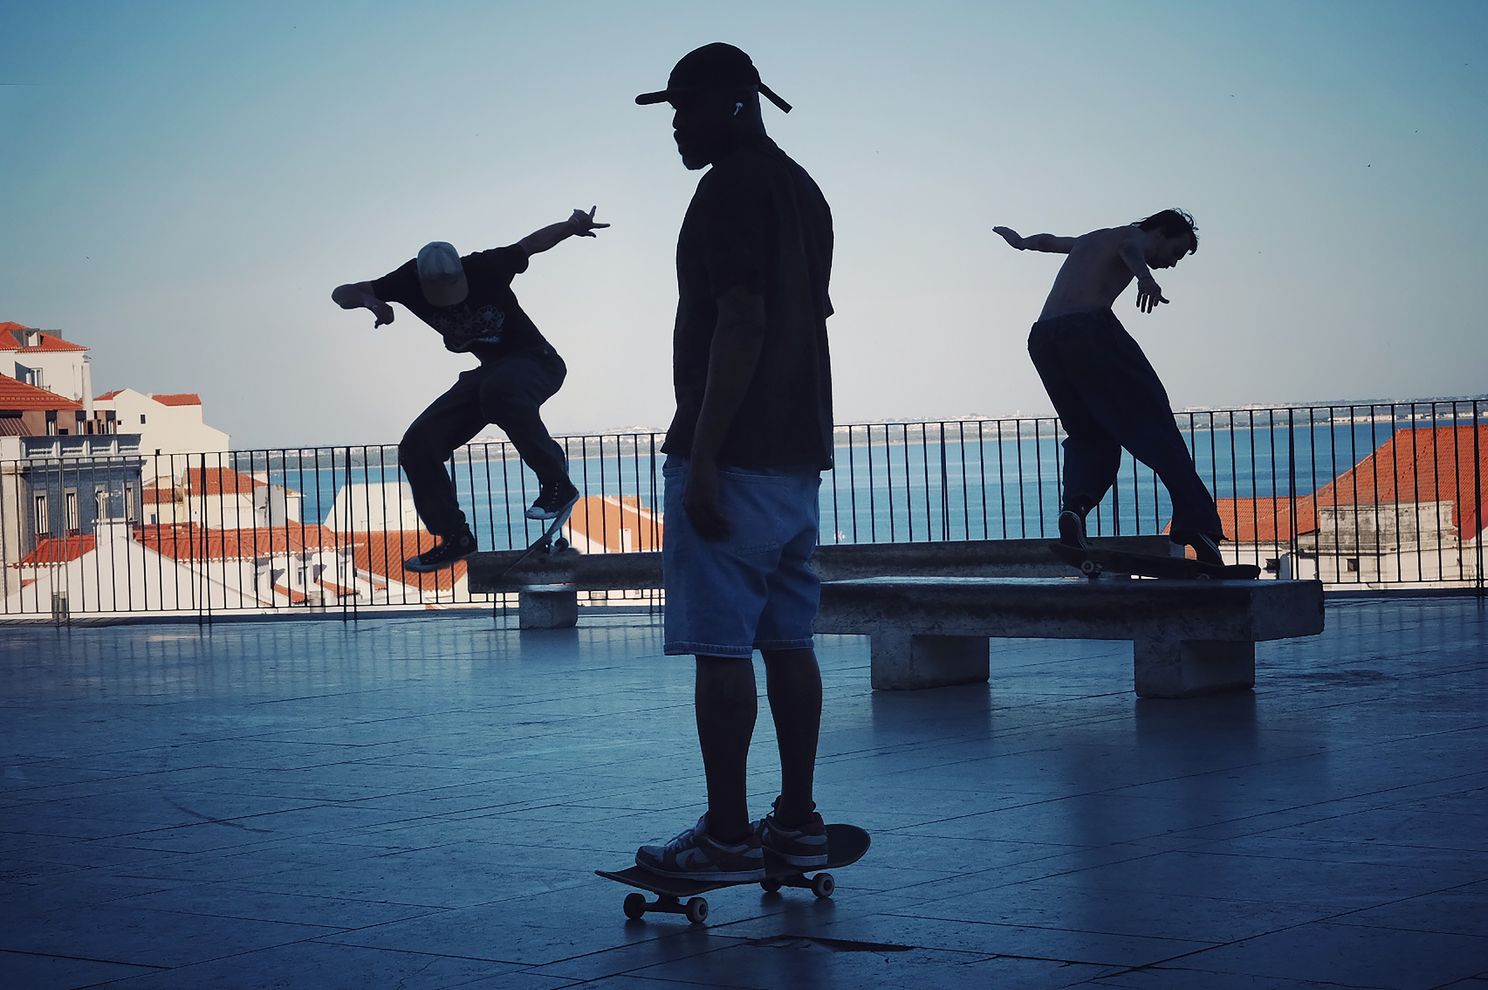 Lisbon Skateboarders